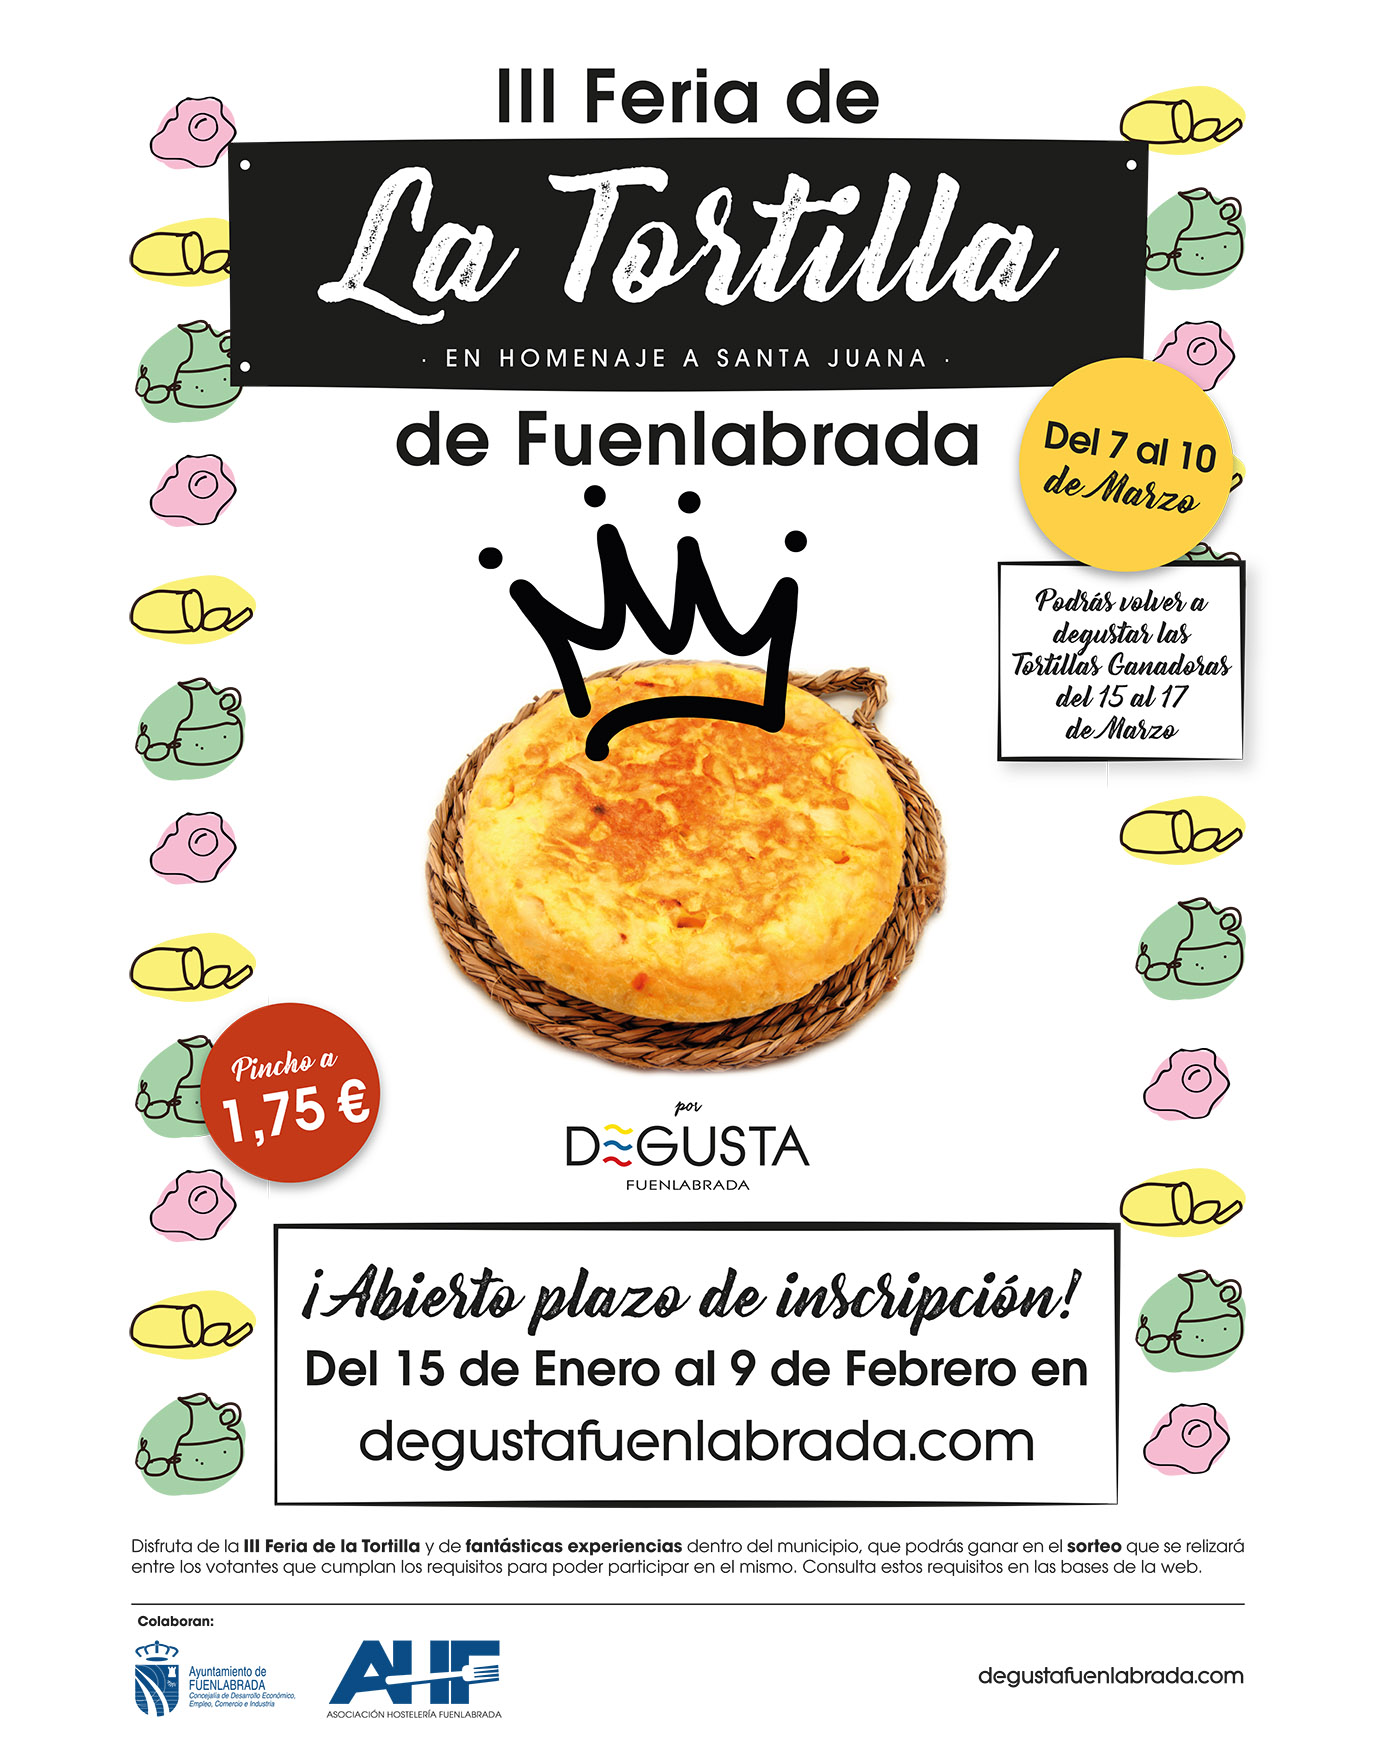 La III Feria de la Tortilla en Fuenlabrada, del 7 al 10 de marzo, invita a los establecimientos a ofrecer tapas de tortilla a precios especiales, con votaciones digitales y premios para las mejores creaciones, creando una experiencia gastronómica participativa y deliciosa.